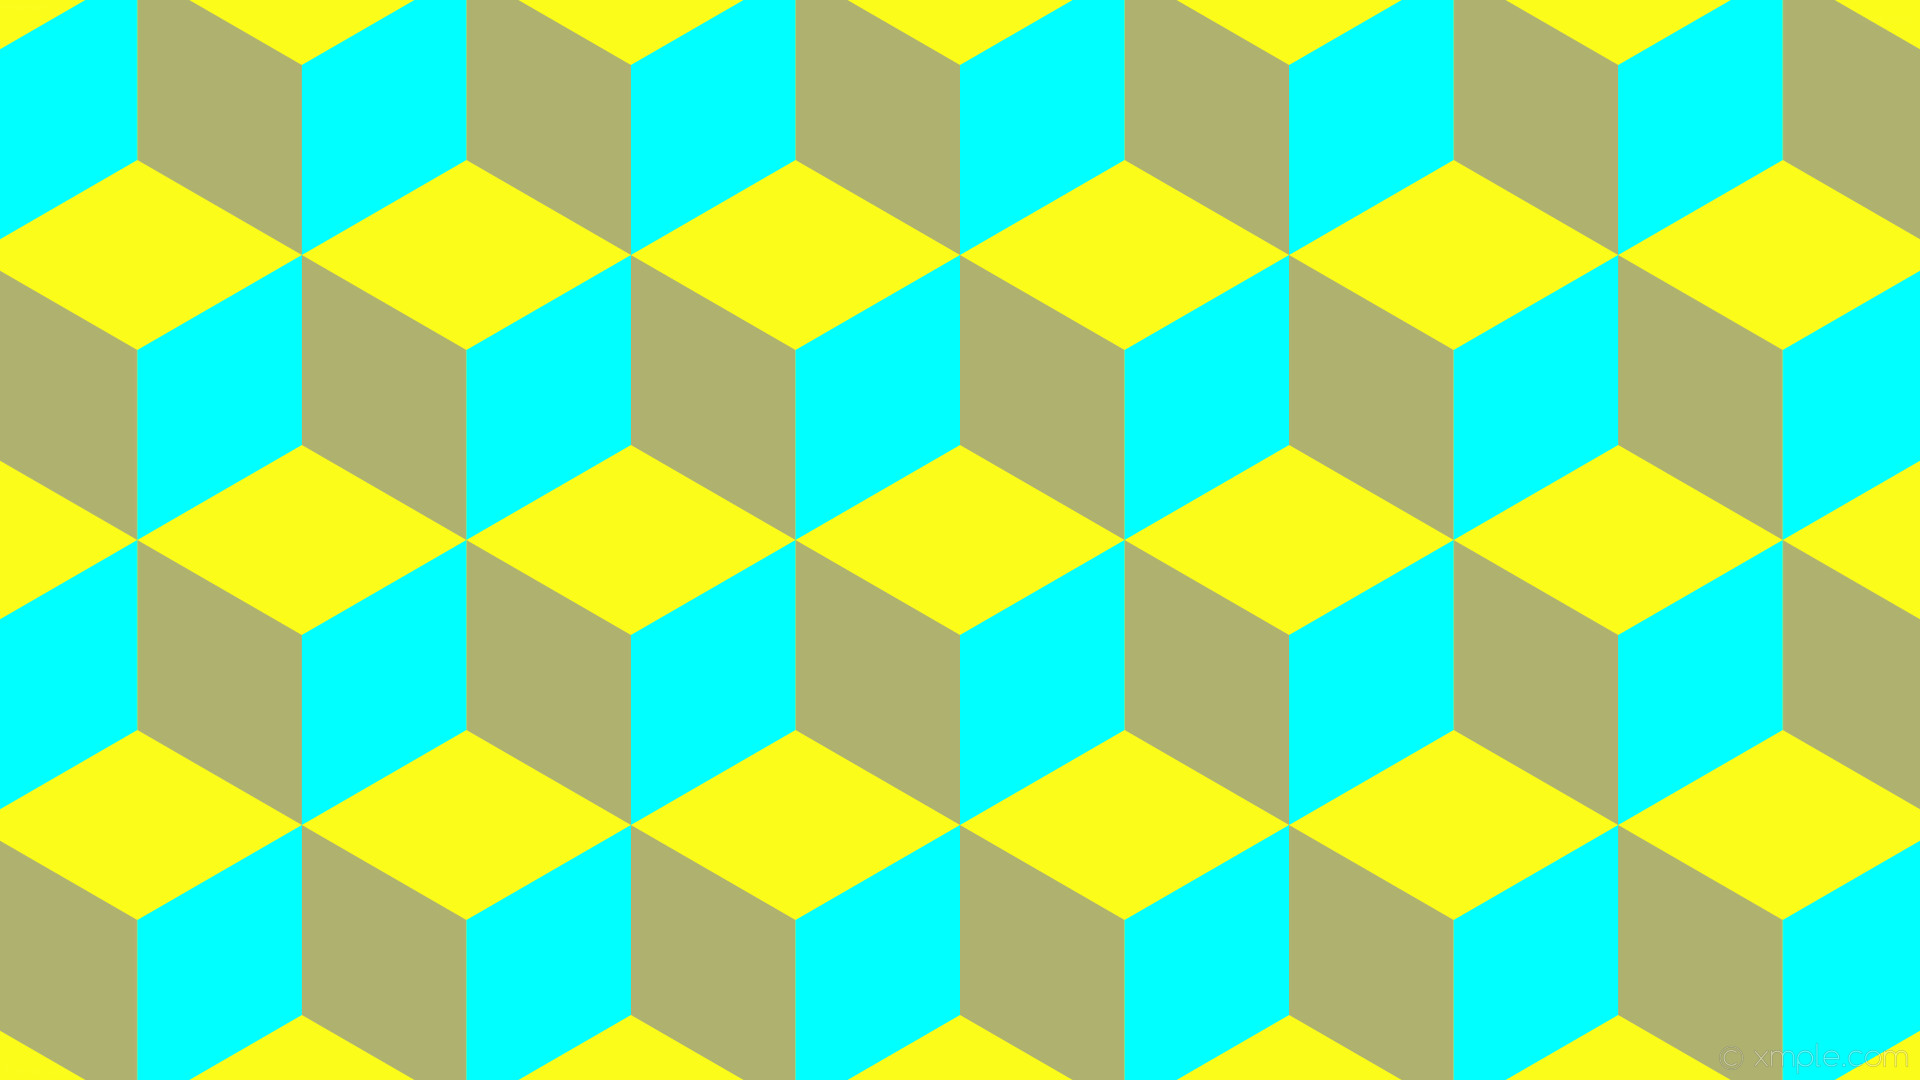 1920x1080 wallpaper 3d cubes blue yellow aqua cyan #fcfc1b #afb26f #00ffff 0Â° 190px